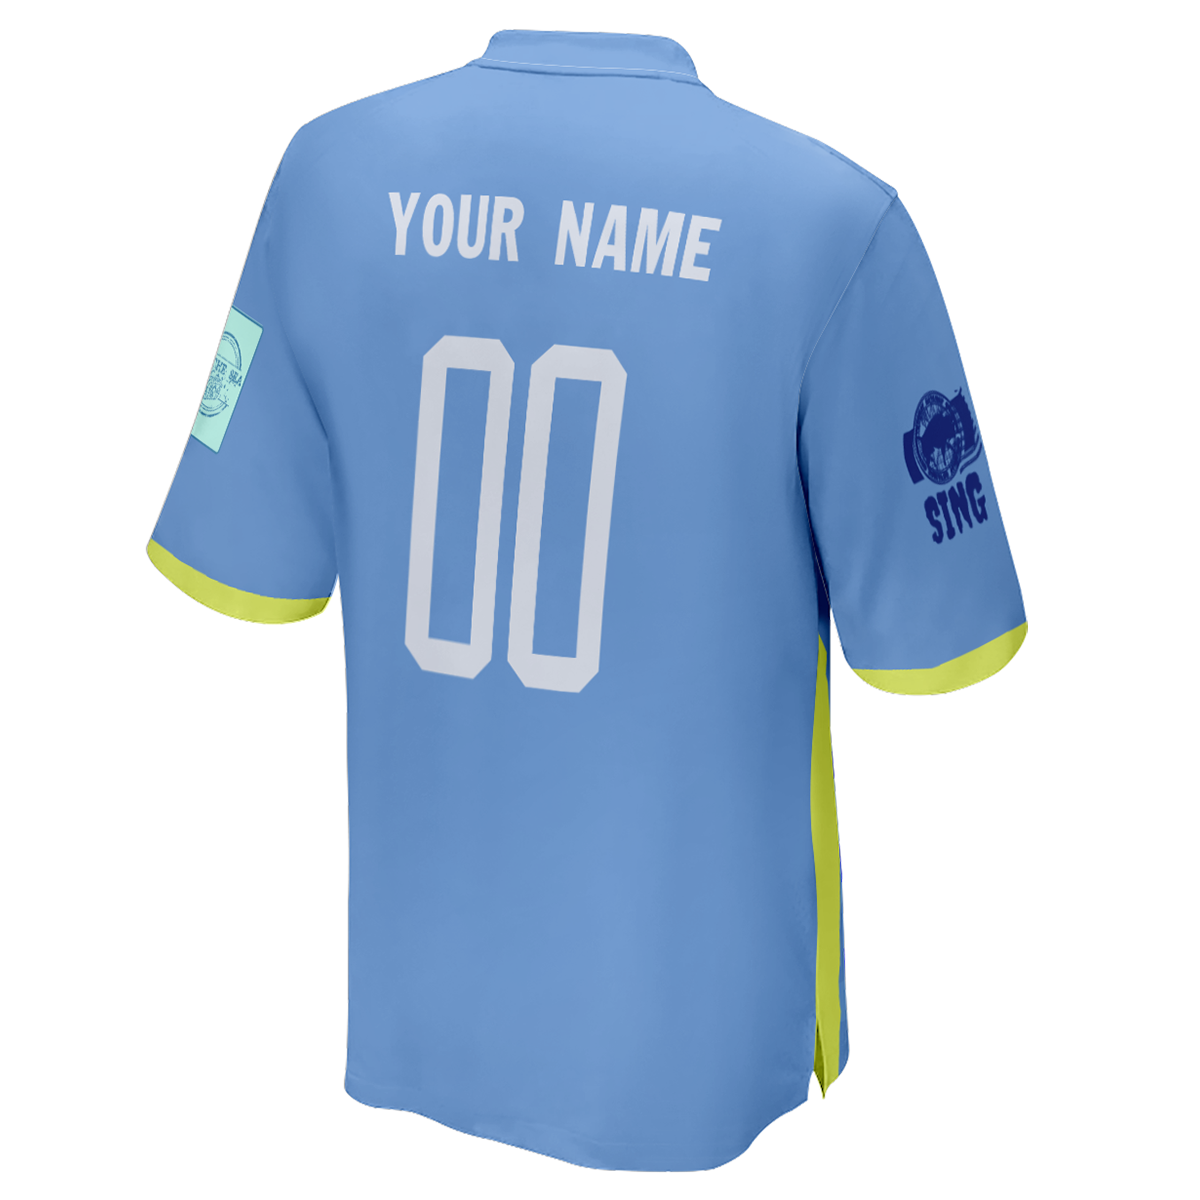 Camiseta de fútbol personalizada con logotipo de la Copa Mundial de Uruguay impresa para hombre